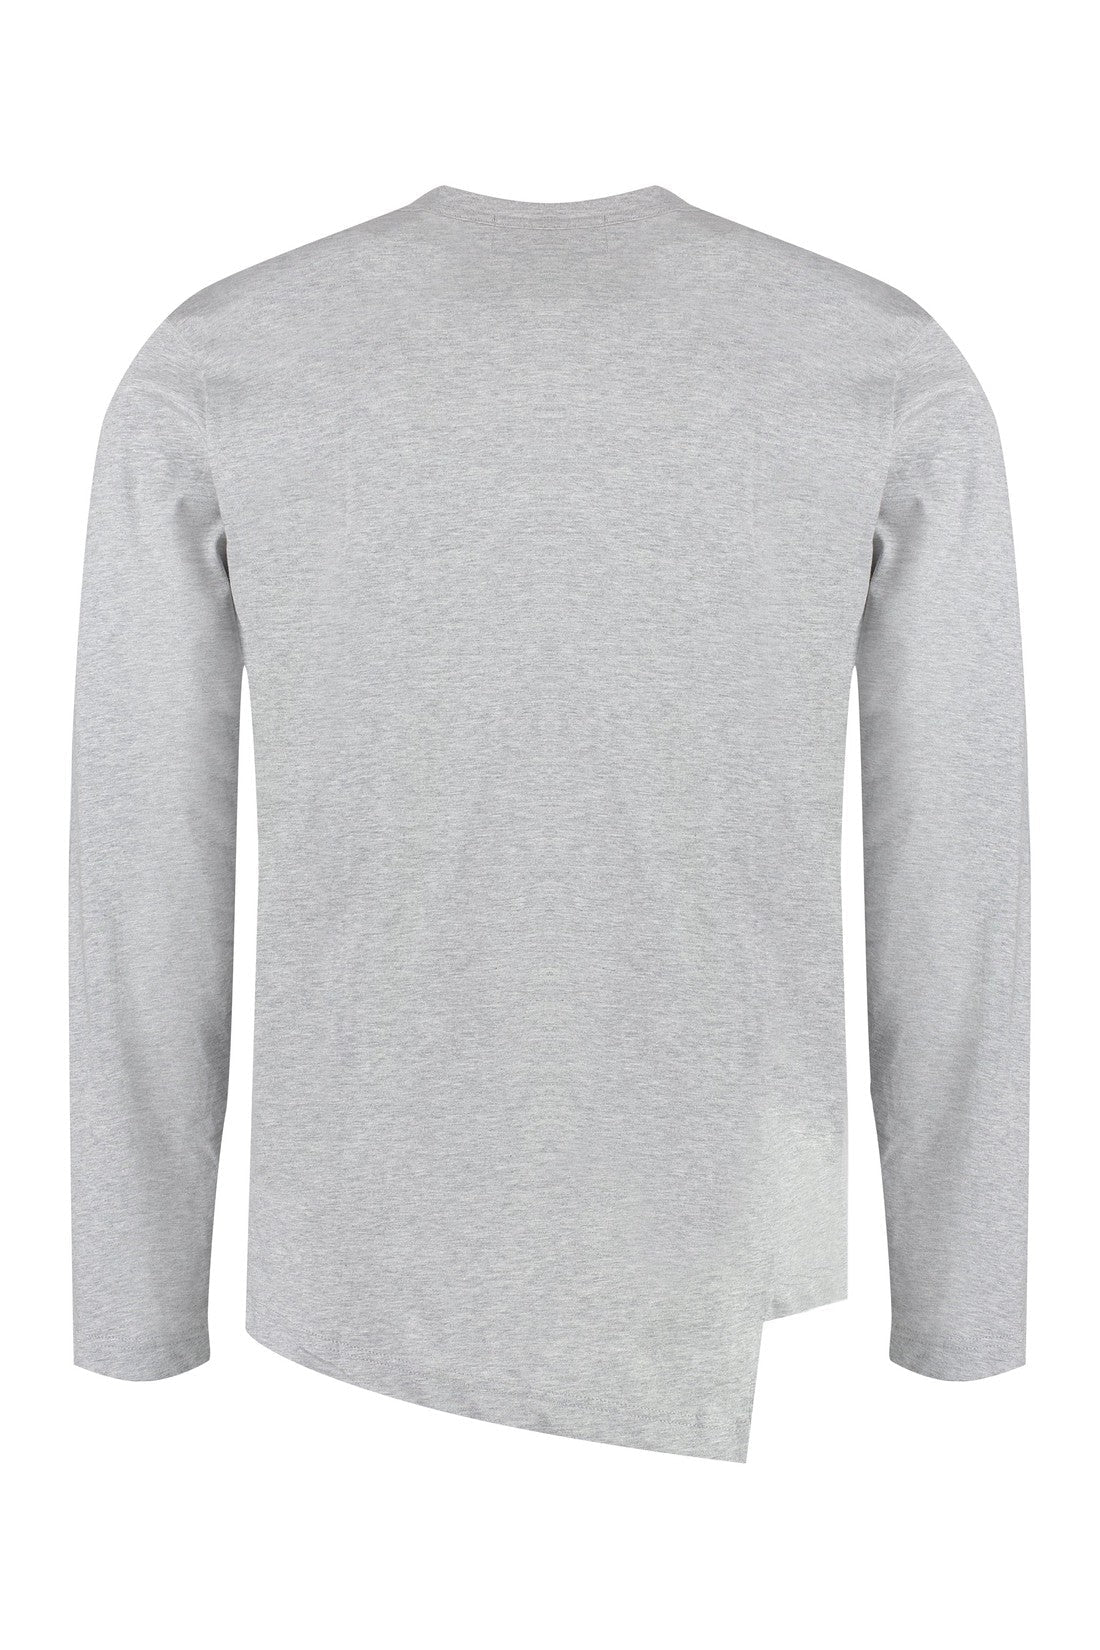 Comme des Garçons SHIRT-OUTLET-SALE-Lacoste X Comme des Garçons - long sleeve cotton t-shirt-ARCHIVIST